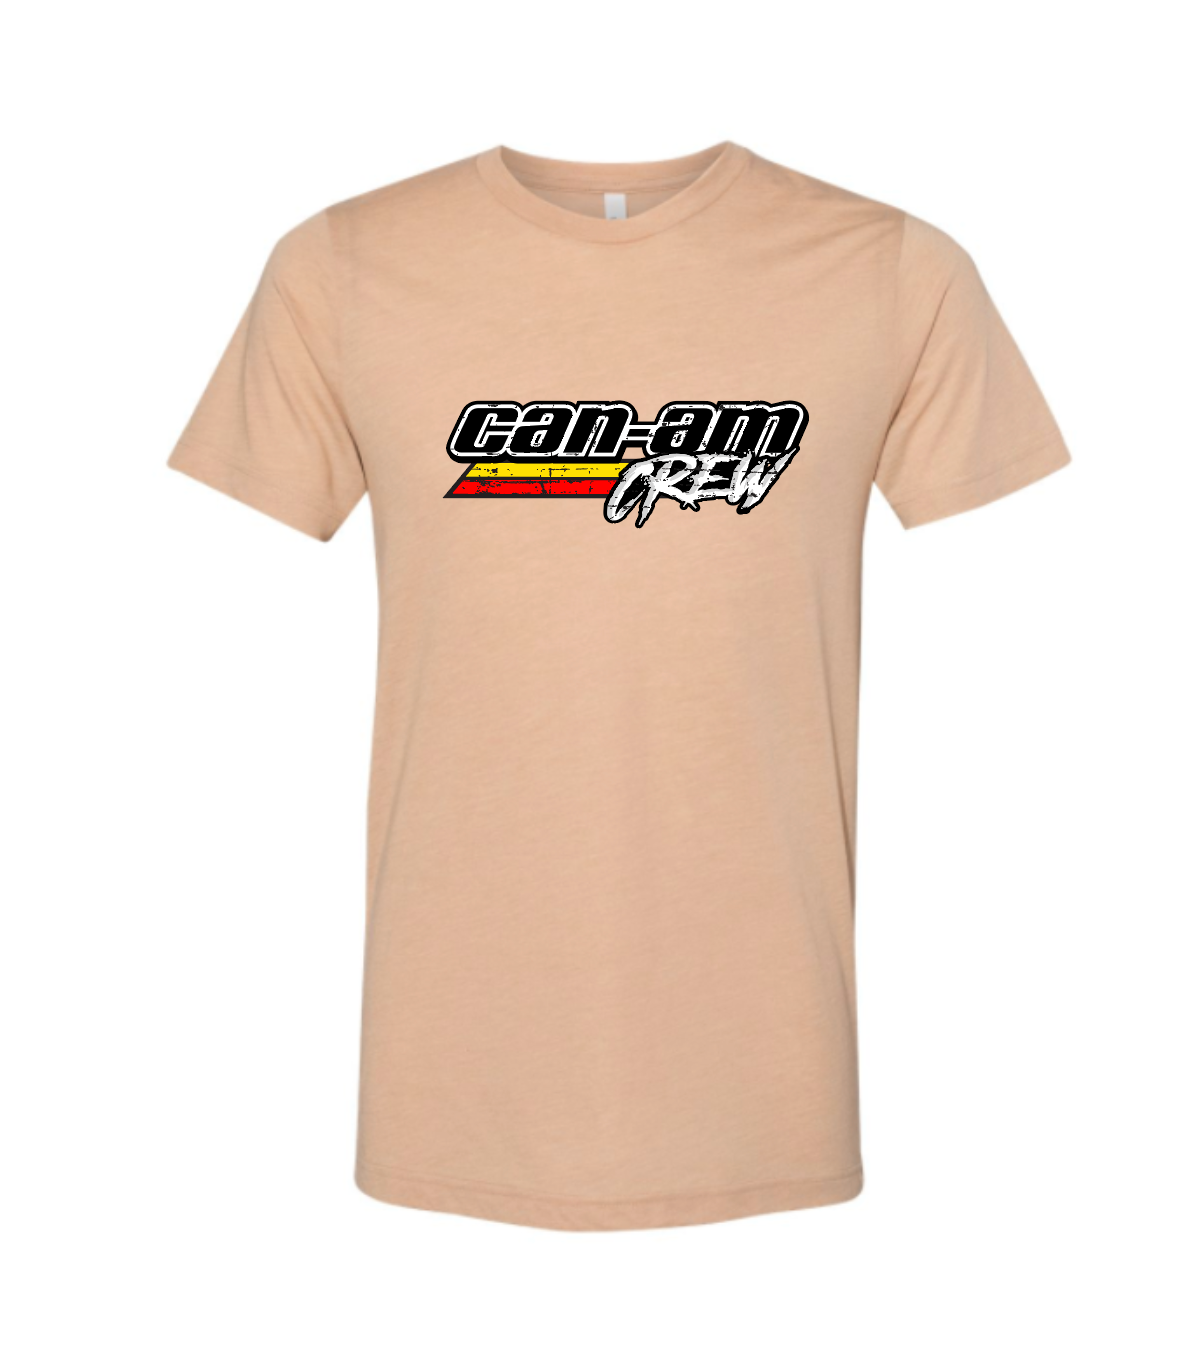 Men's Can-am Crew T-Shirt